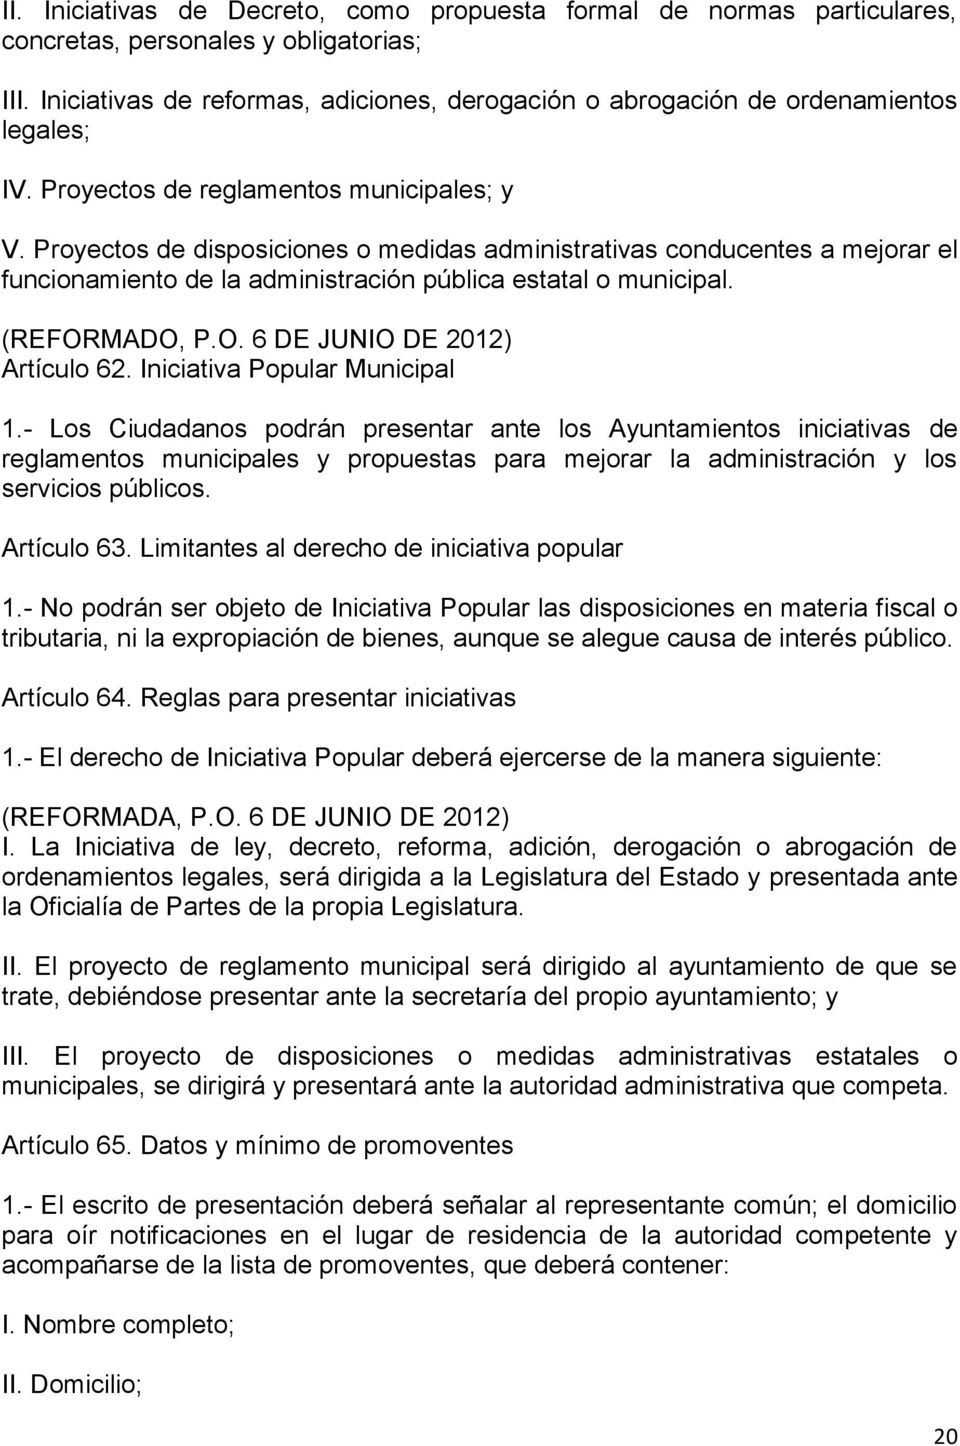 Proyectos de disposiciones o medidas administrativas conducentes a mejorar el funcionamiento de la administración pública estatal o municipal. (REFORMADO, P.O. 6 DE JUNIO DE 2012) Artículo 62.